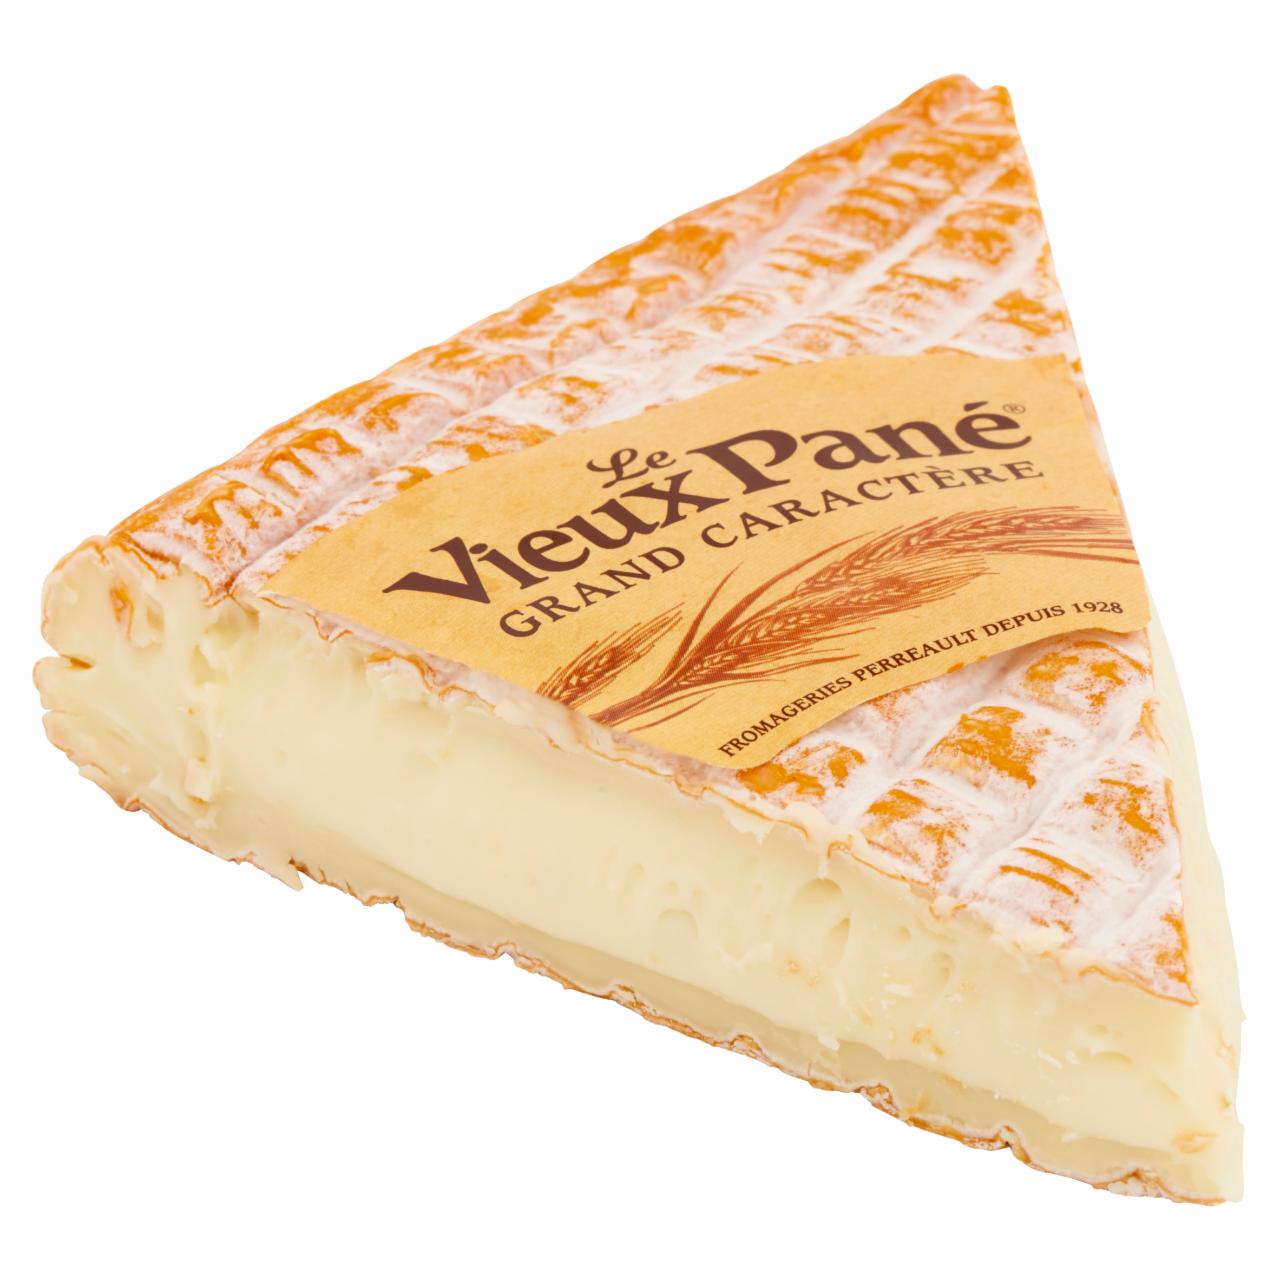 Képek - Le Vieux Pané sajt 2,3 kg